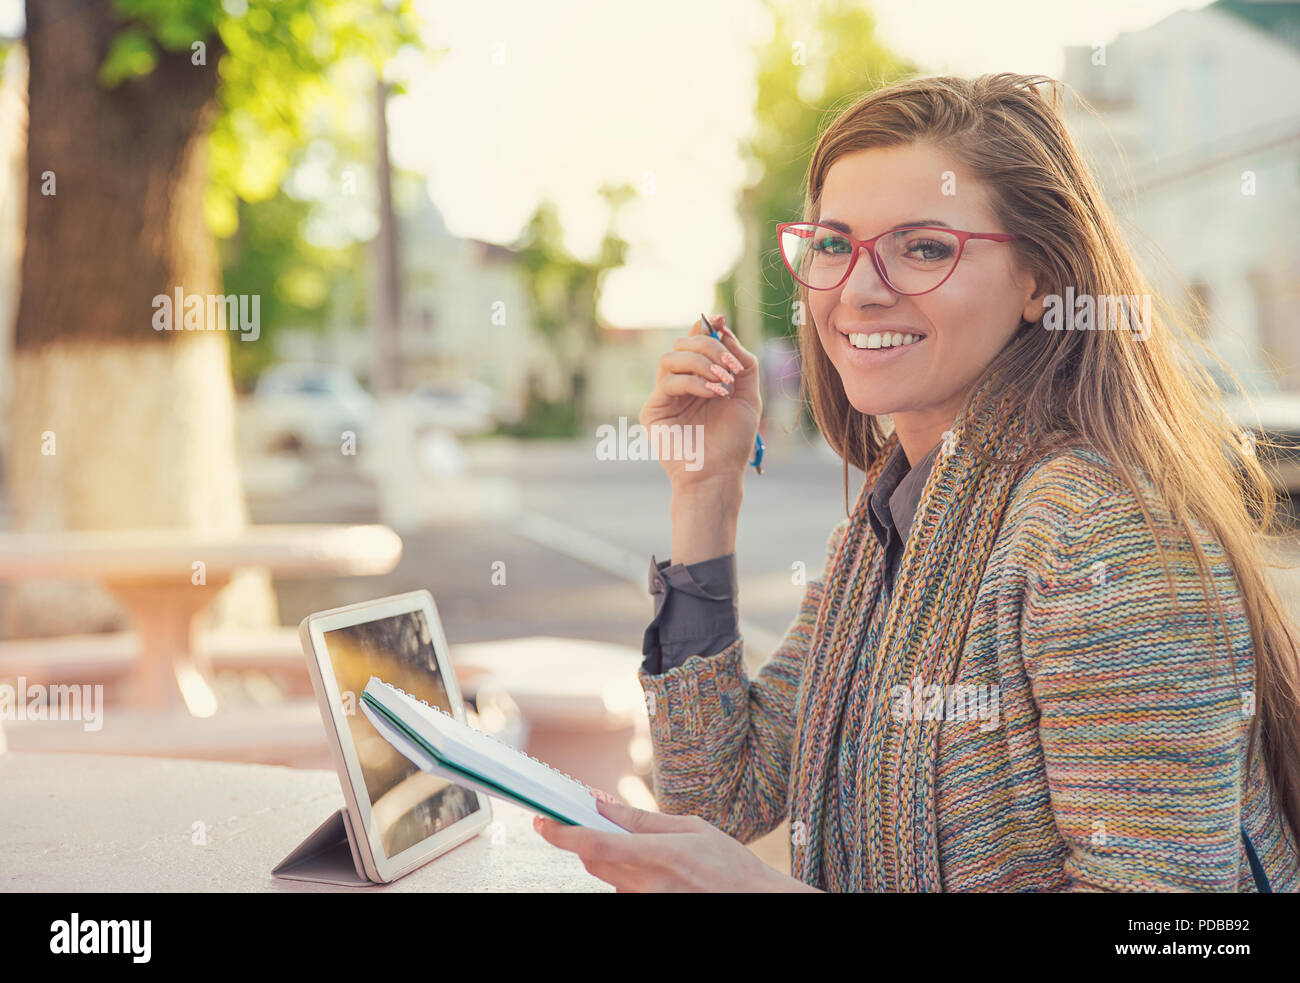 Piuttosto elegante hipster donna in bicchieri seduto sulla strada con il tablet e blocco note aventi studi e sorridente in telecamera Foto Stock